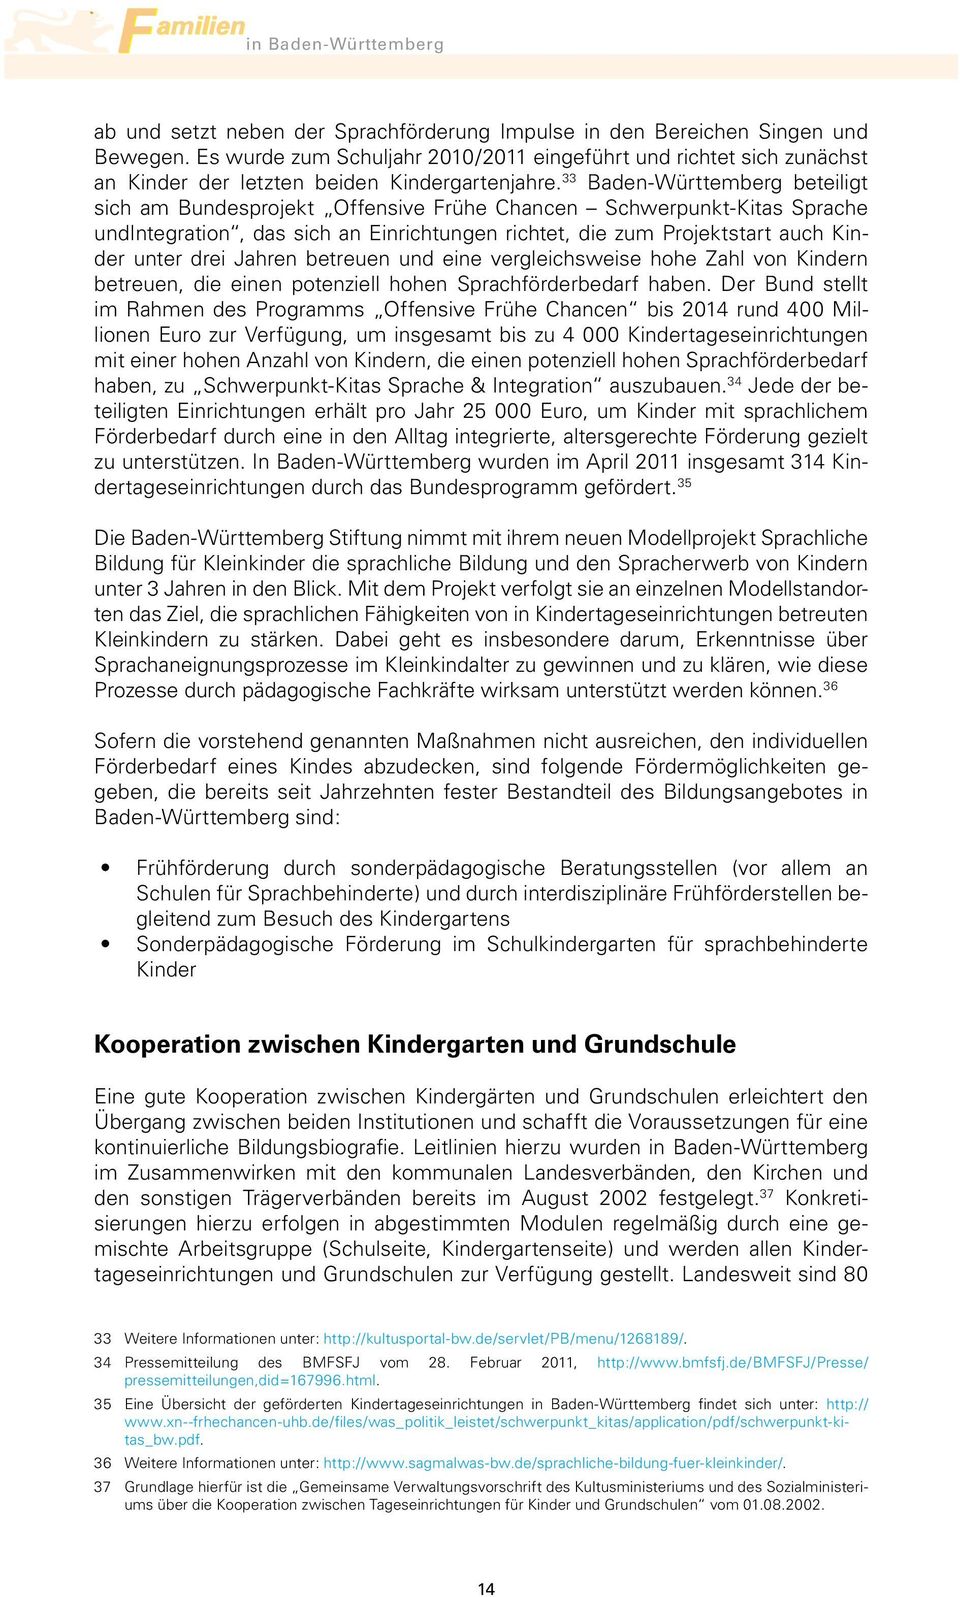 33 Baden-Württemberg beteiligt sich am Bundesprojekt Offensive Frühe Chancen Schwerpunkt-Kitas Sprache undintegration, das sich an Einrichtungen richtet, die zum Projektstart auch Kinder unter drei